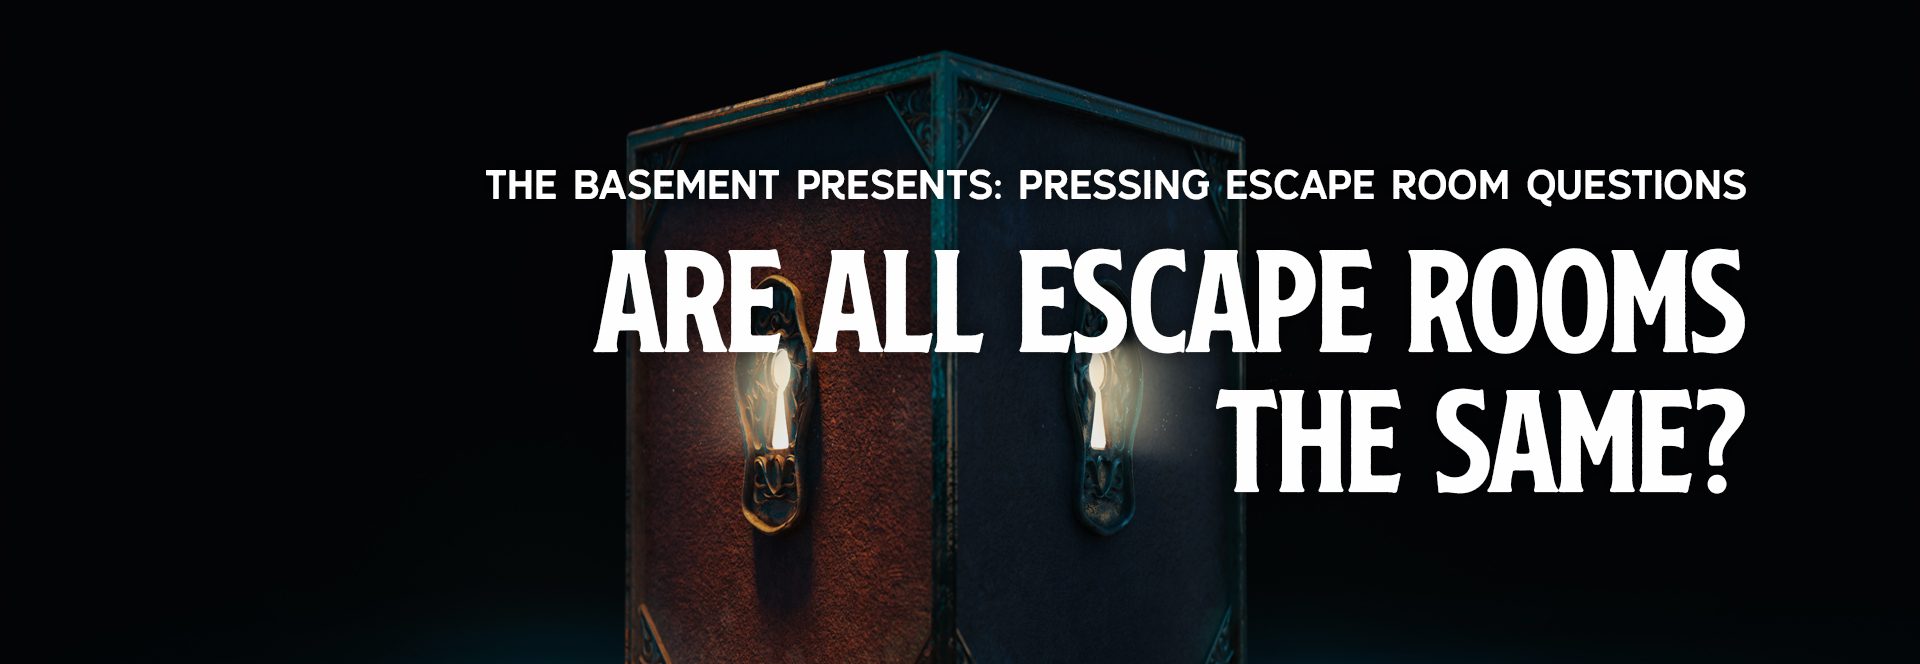 Are All Escape Rooms The Same?